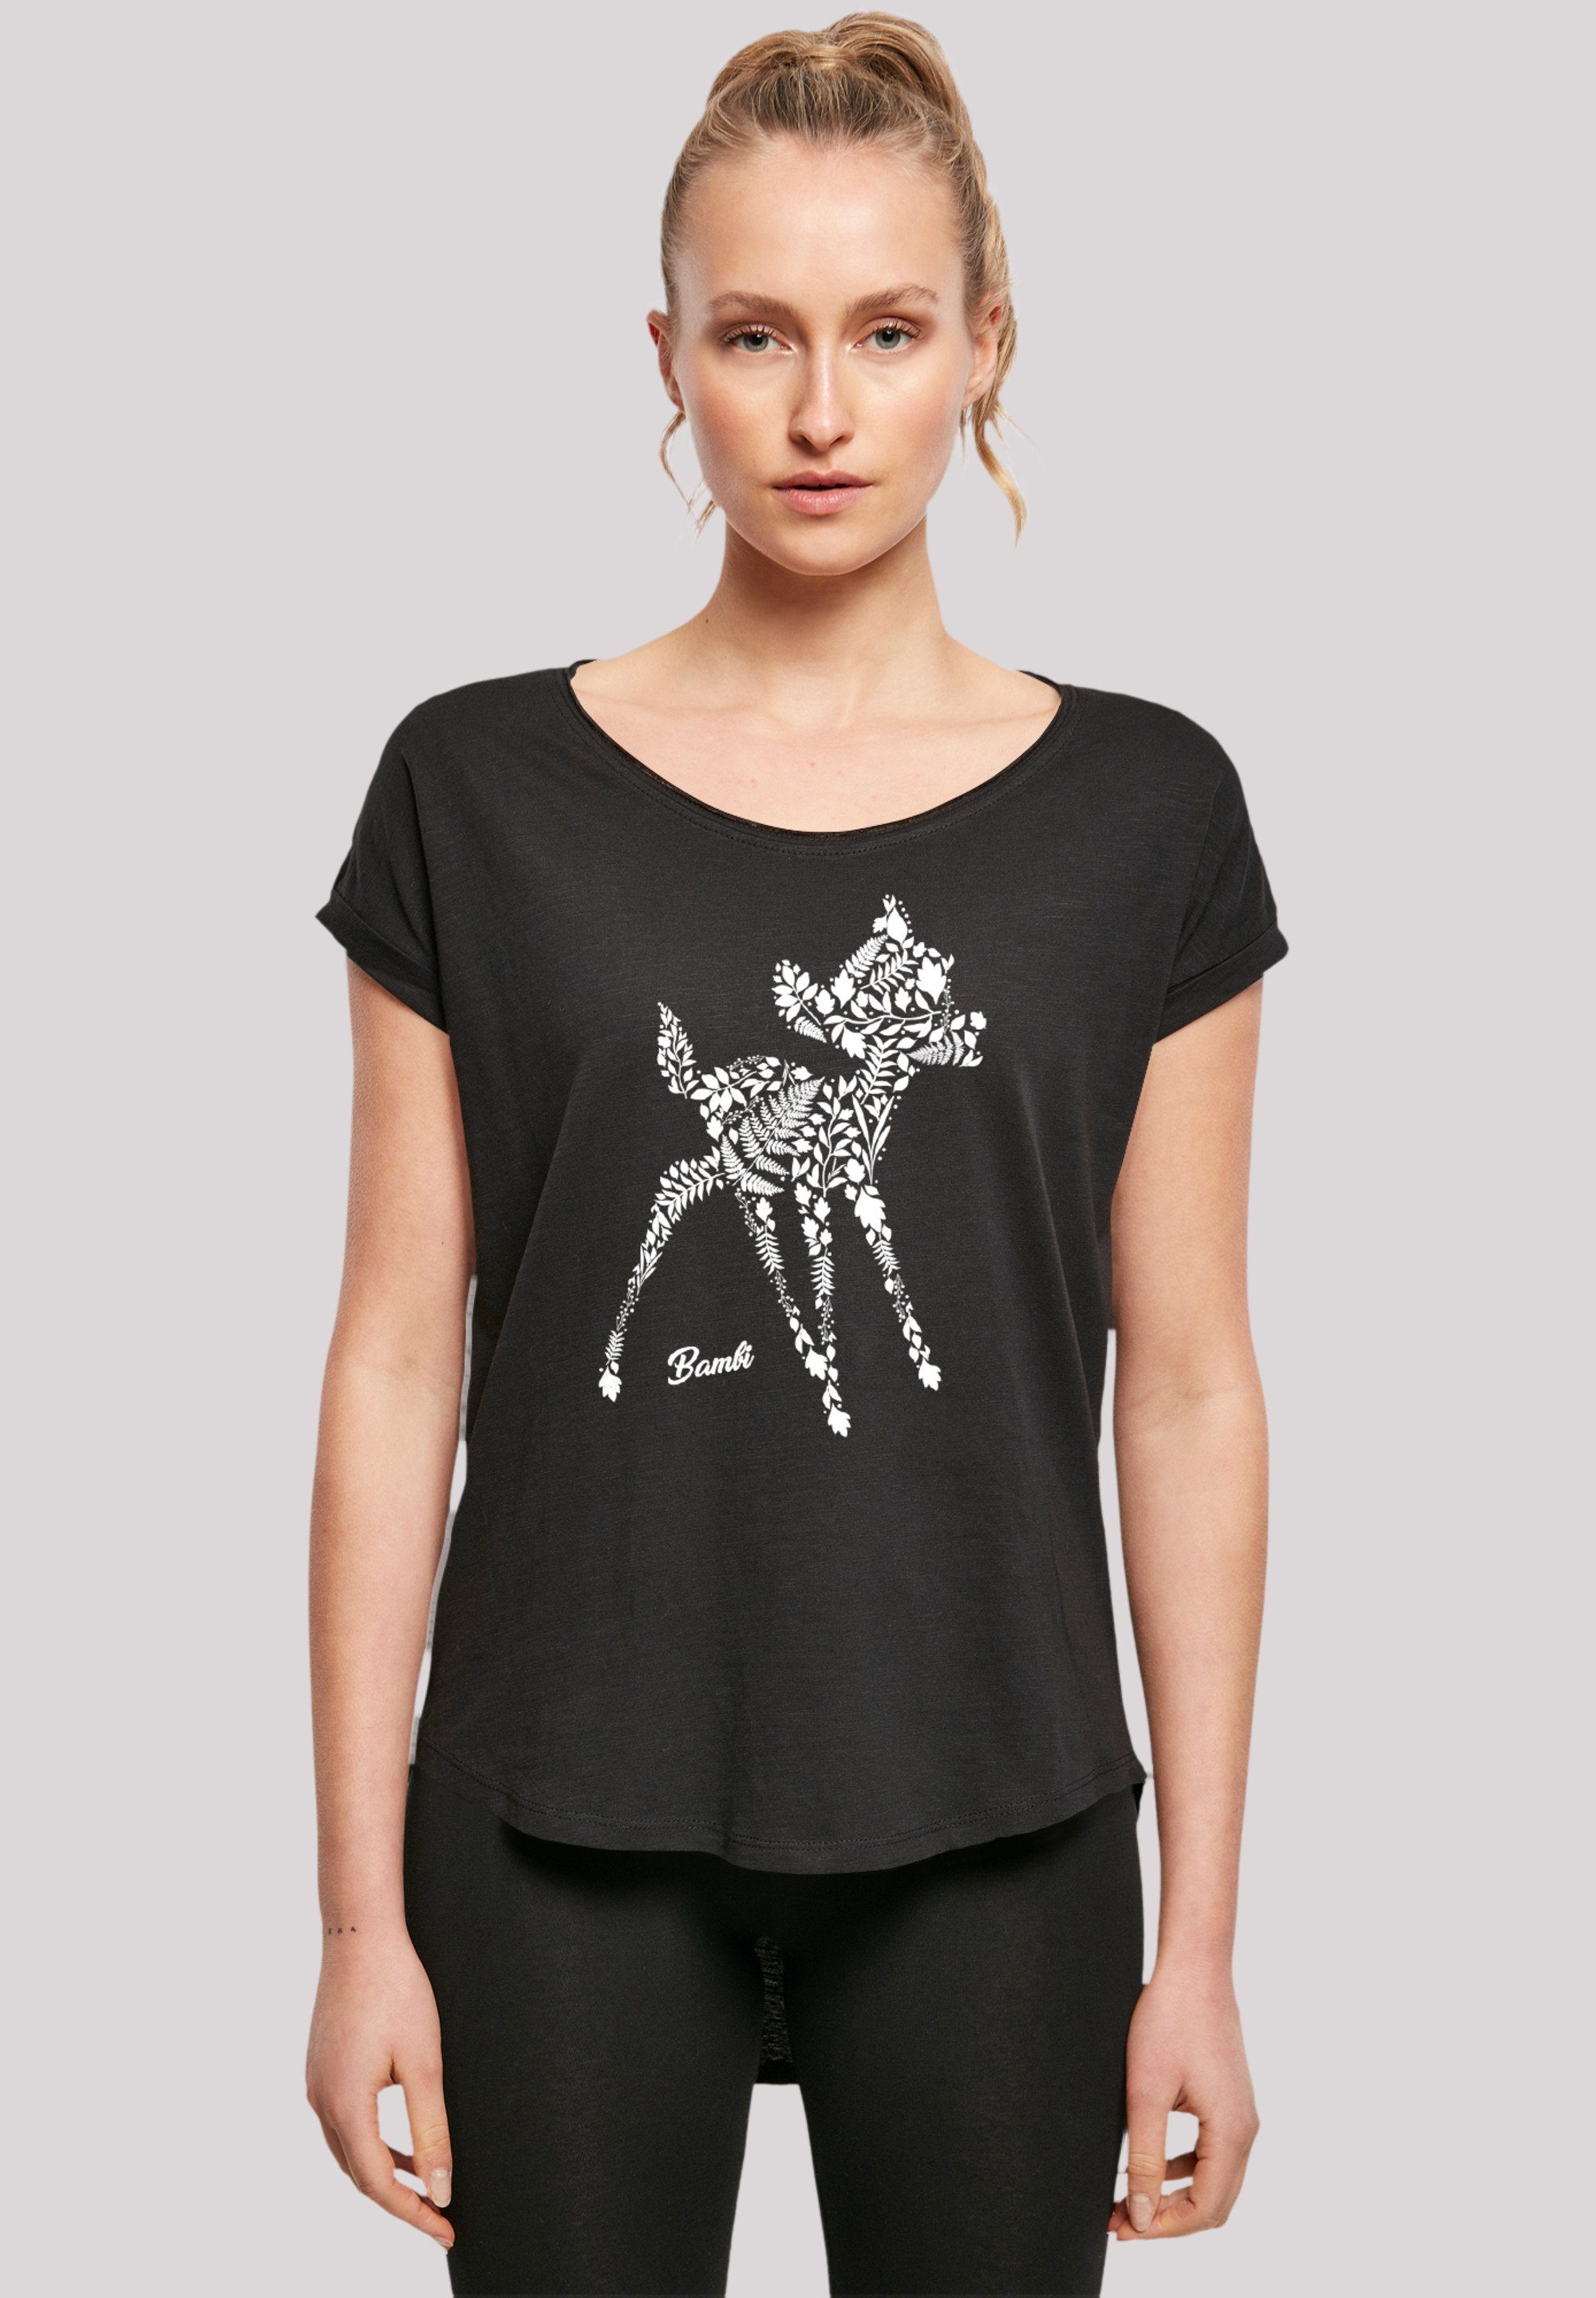 F4NT4STIC T-Shirt Disney Qualität, Sehr Baumwollstoff hohem weicher Premium mit Botanica Tragekomfort Bambi